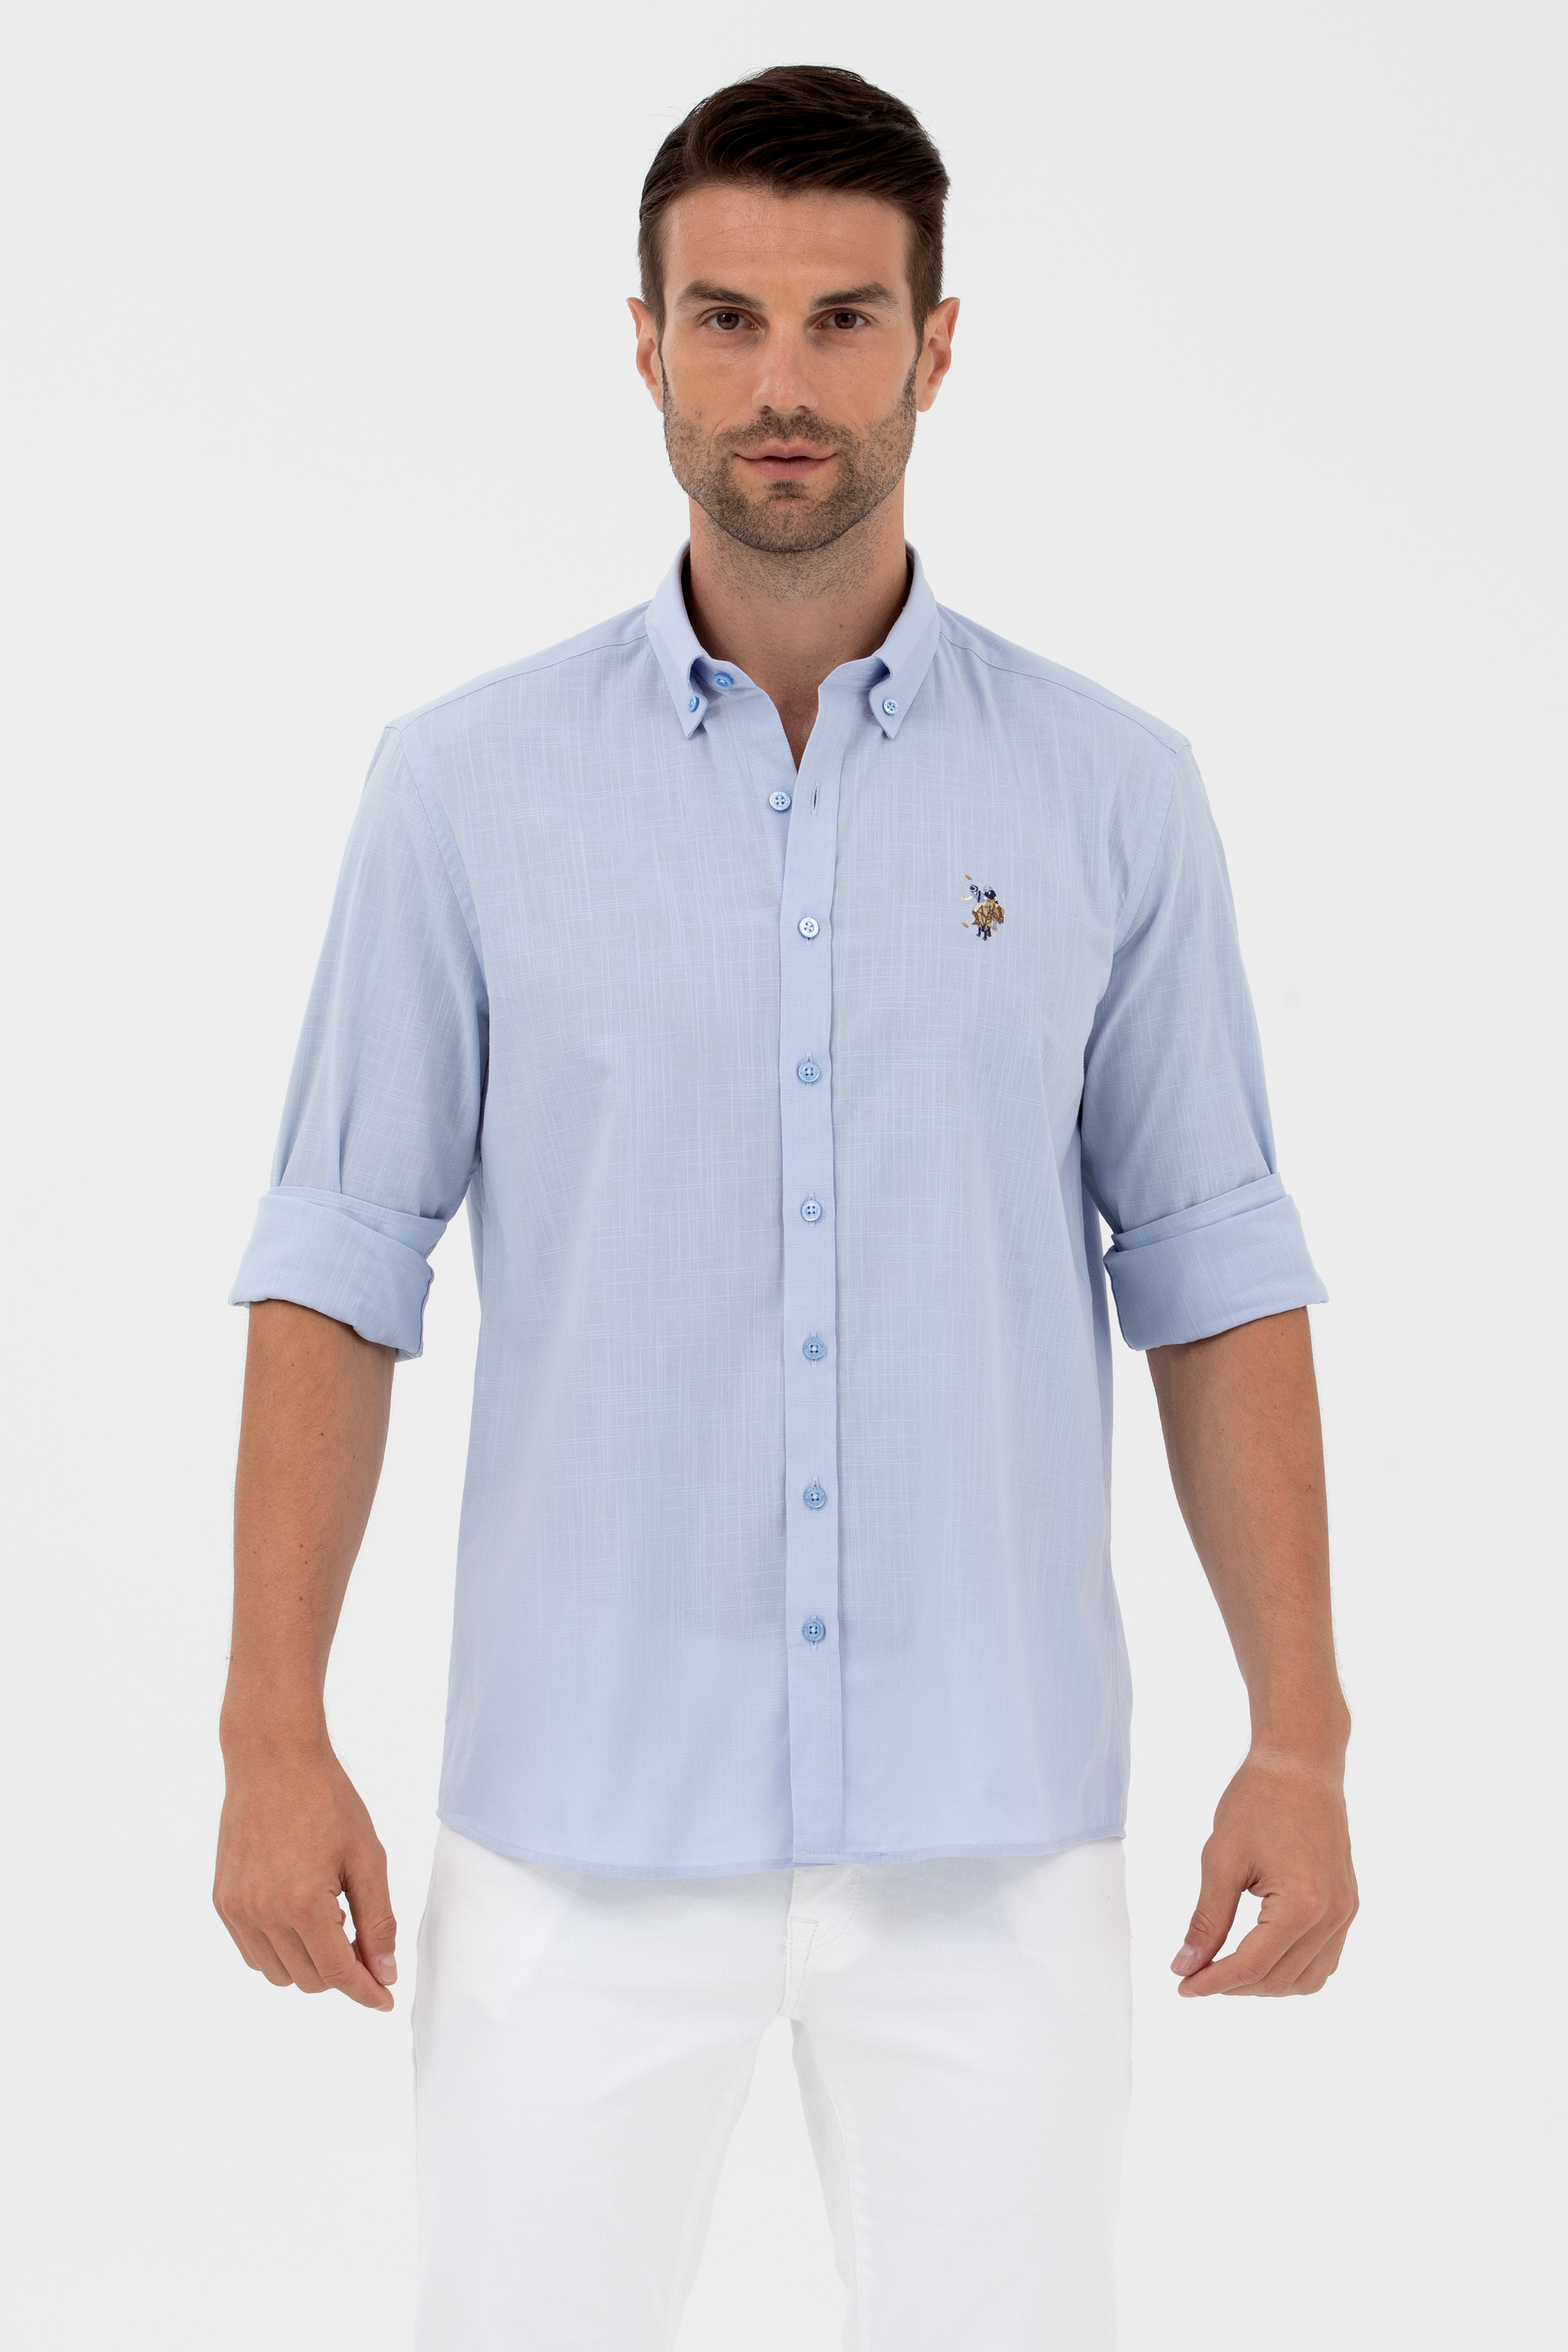 Рубашка мужская U.S. POLO Assn. G081GL004-000-1570318-ENZOGL023Y голубая 2XL